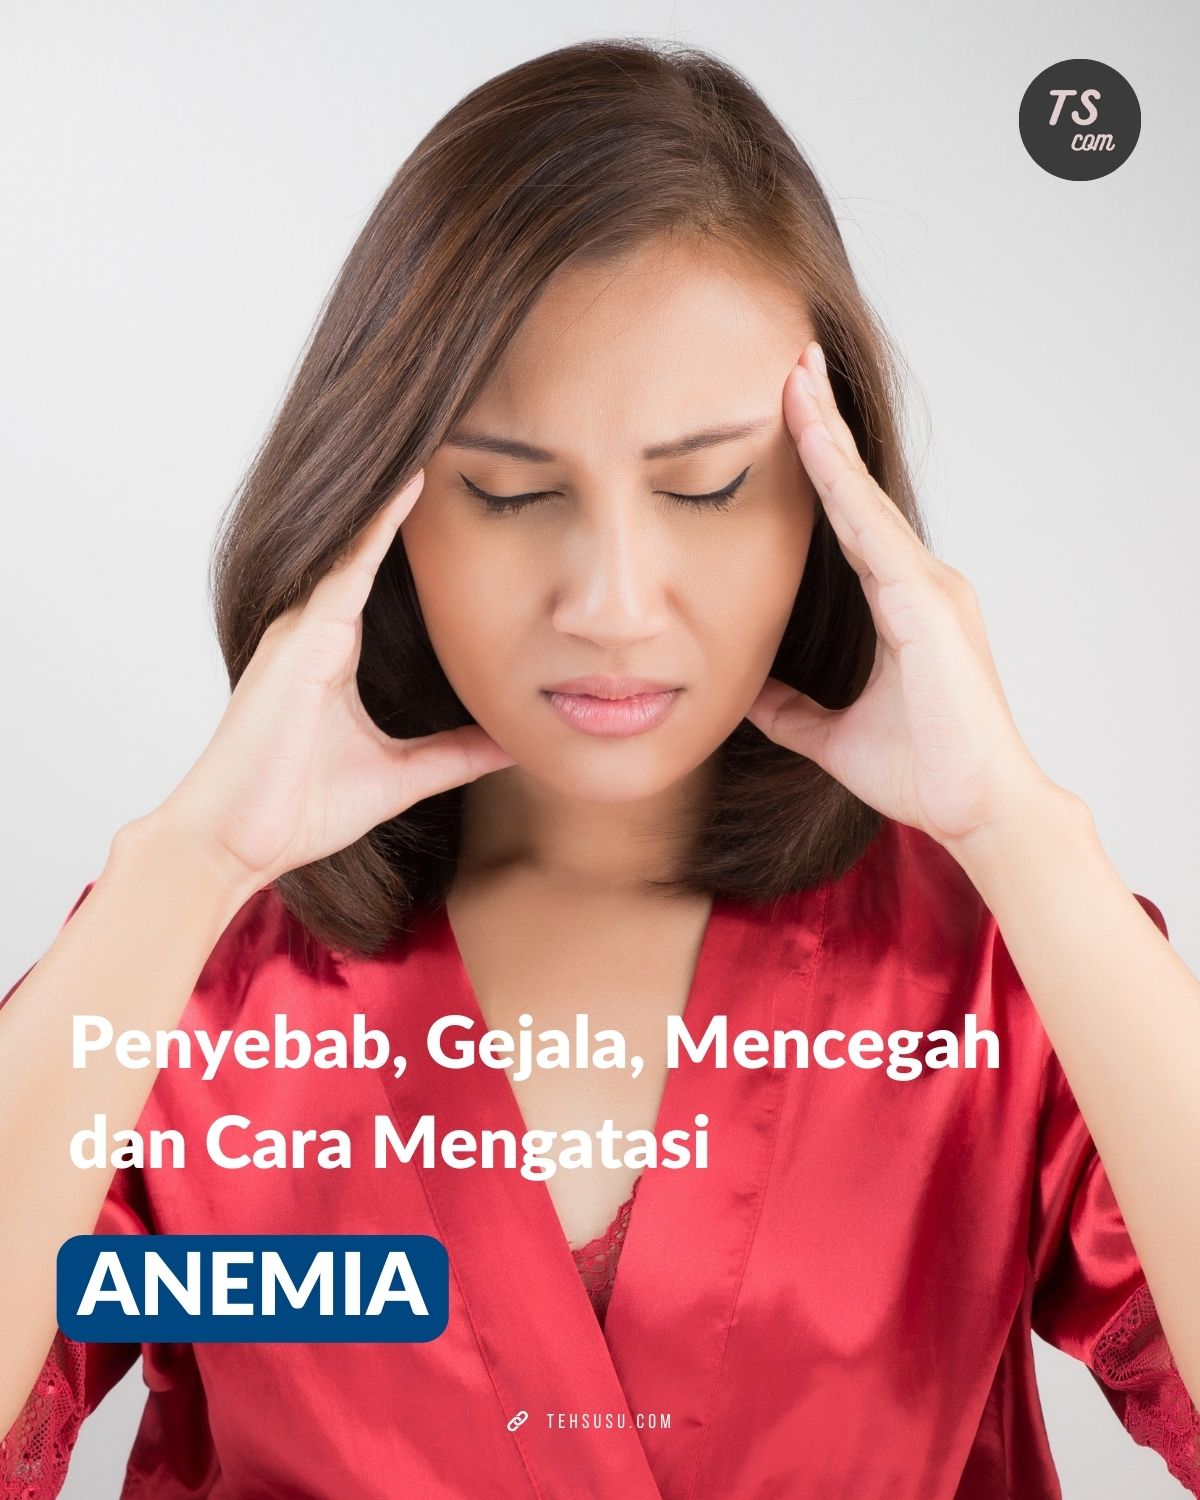 apa itu anemia